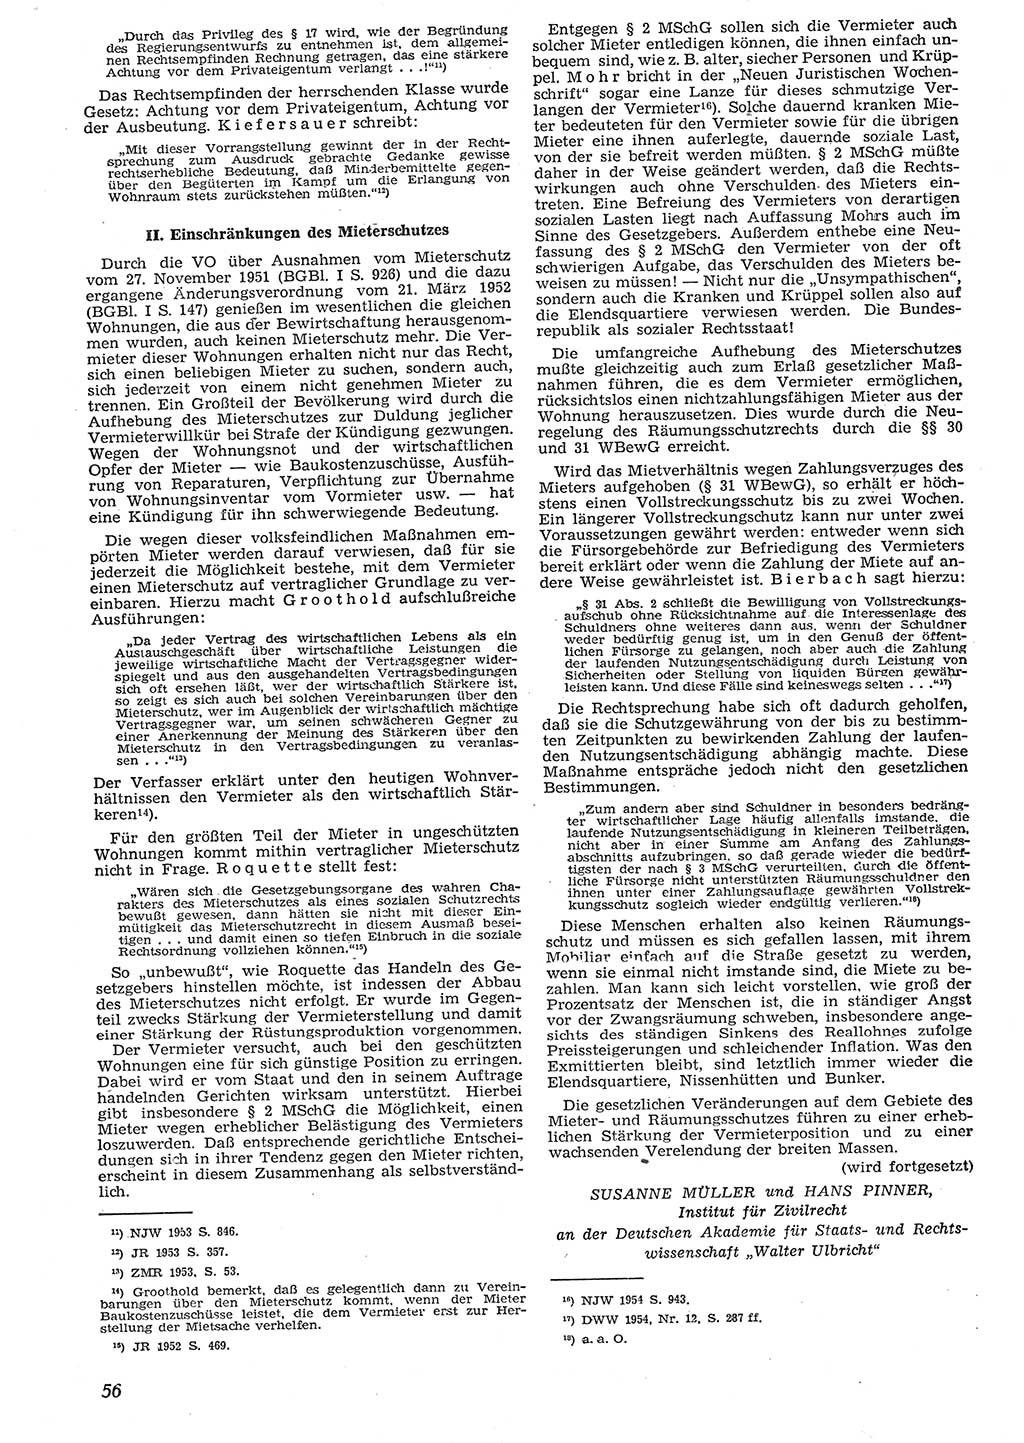 Neue Justiz (NJ), Zeitschrift für Recht und Rechtswissenschaft [Deutsche Demokratische Republik (DDR)], 10. Jahrgang 1956, Seite 56 (NJ DDR 1956, S. 56)